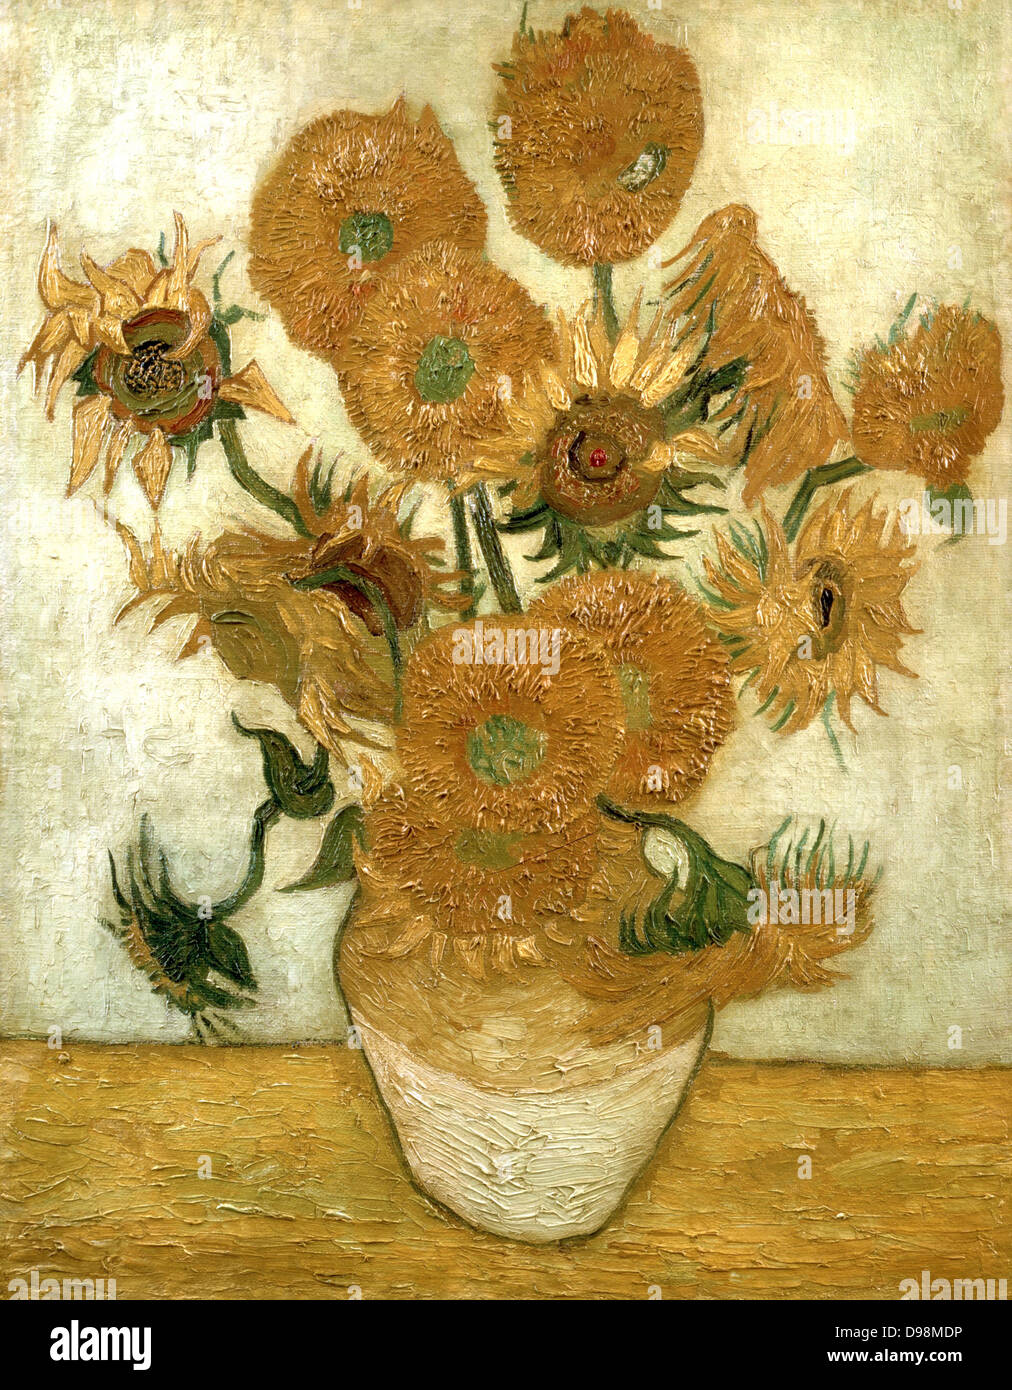 Les tournesols. Huile sur toile Vincent Van Gogh (1853-1890) artiste postimpressionniste néerlandais. Banque D'Images